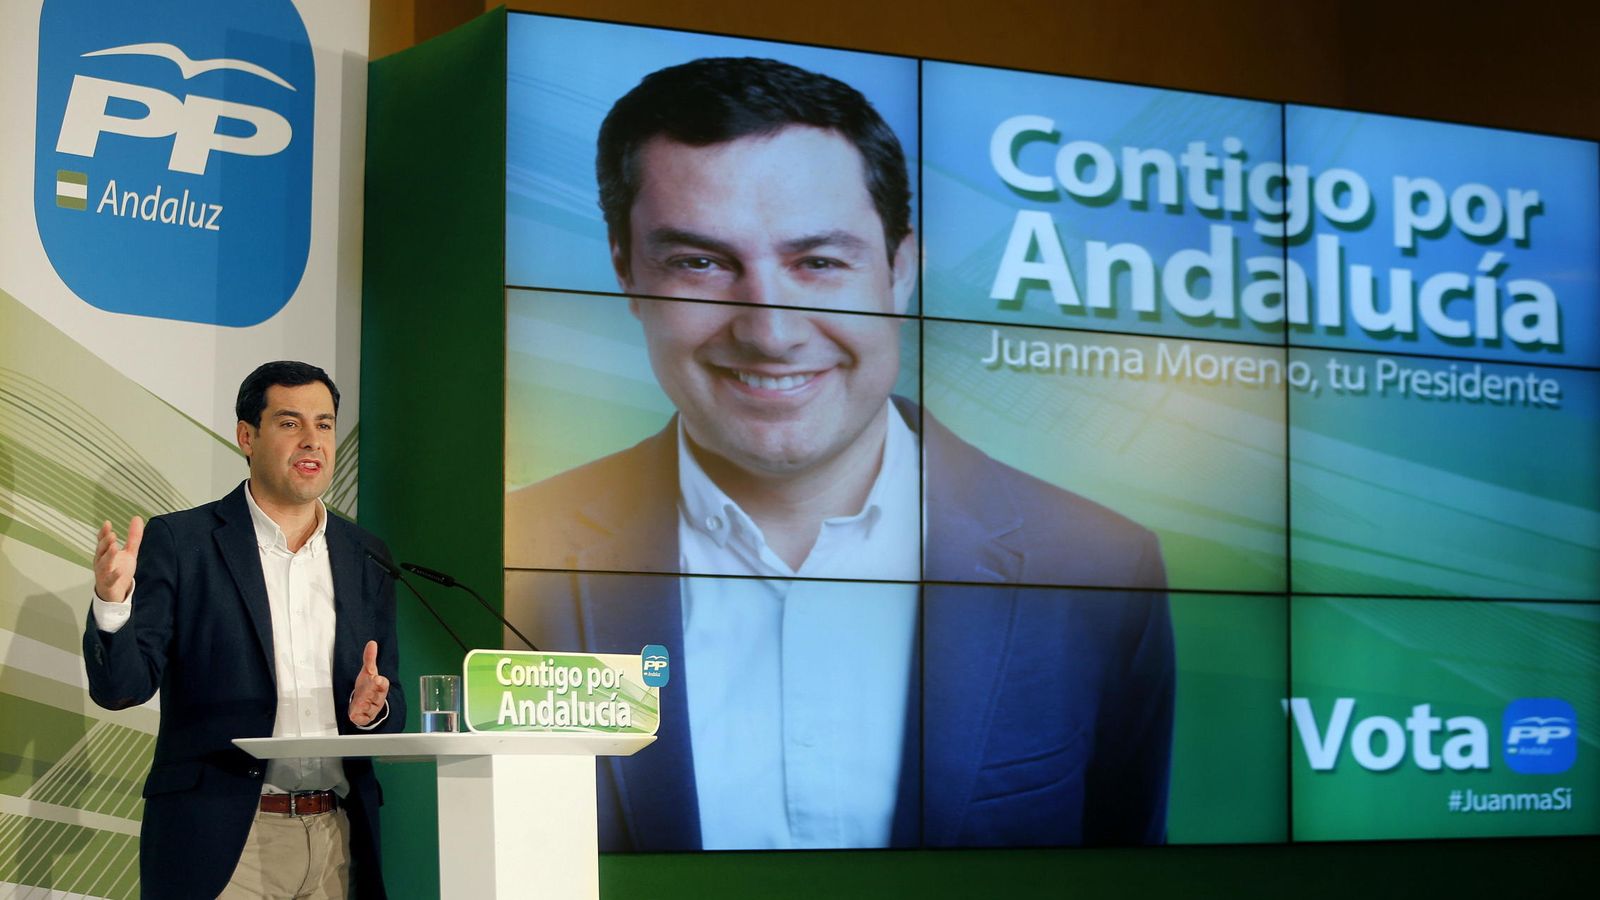 Foto: El candidato del Partido Popular a las elecciones andaluzas, Juanma Moreno Bonilla. (EFE)